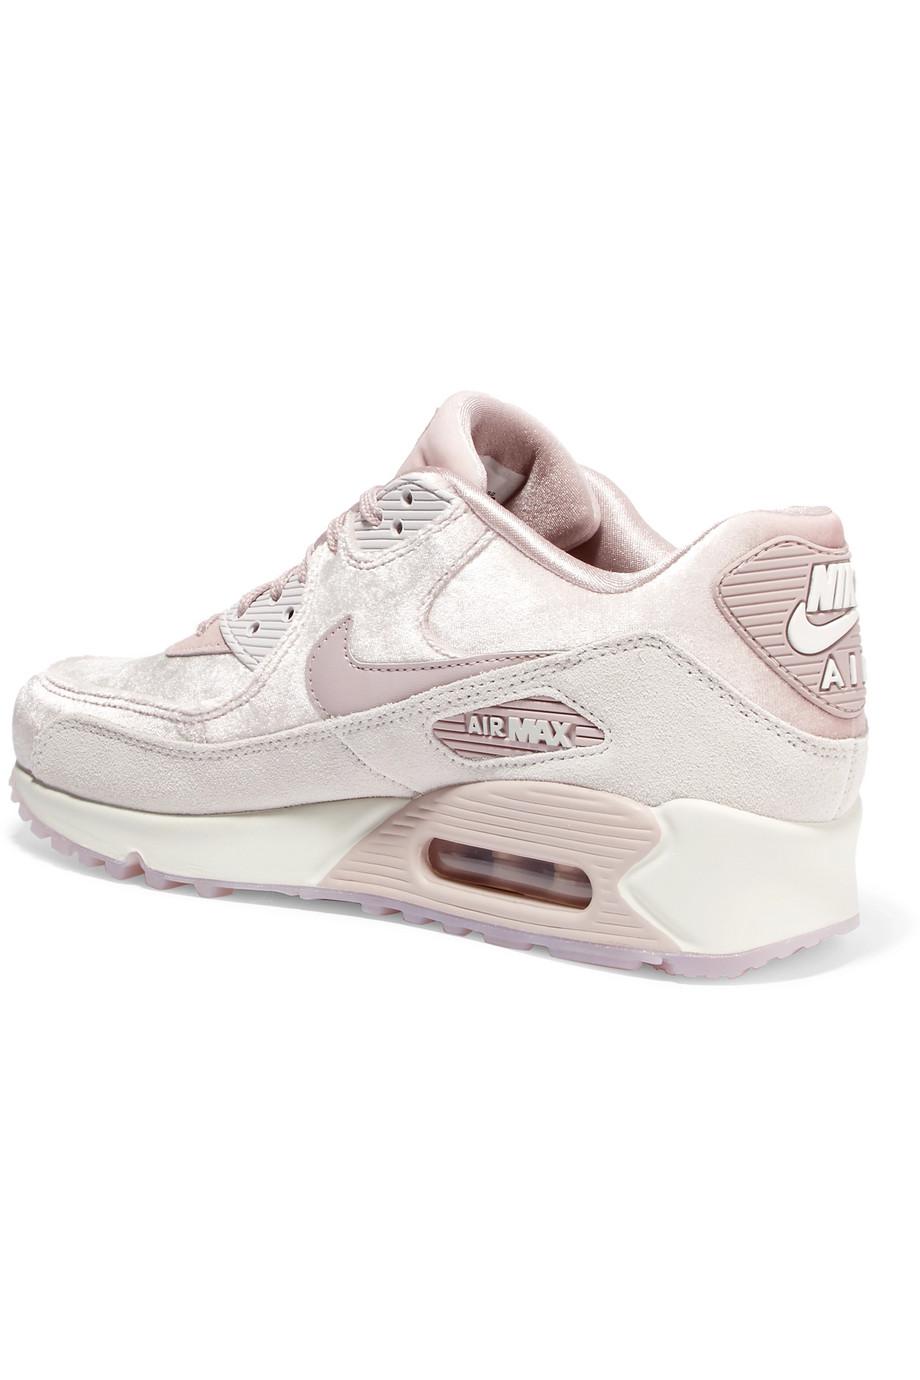 Permanent Onheil Kort geleden Nike Air Max 90 Lx Velvet And Suede Sneakers in Pink | Lyst